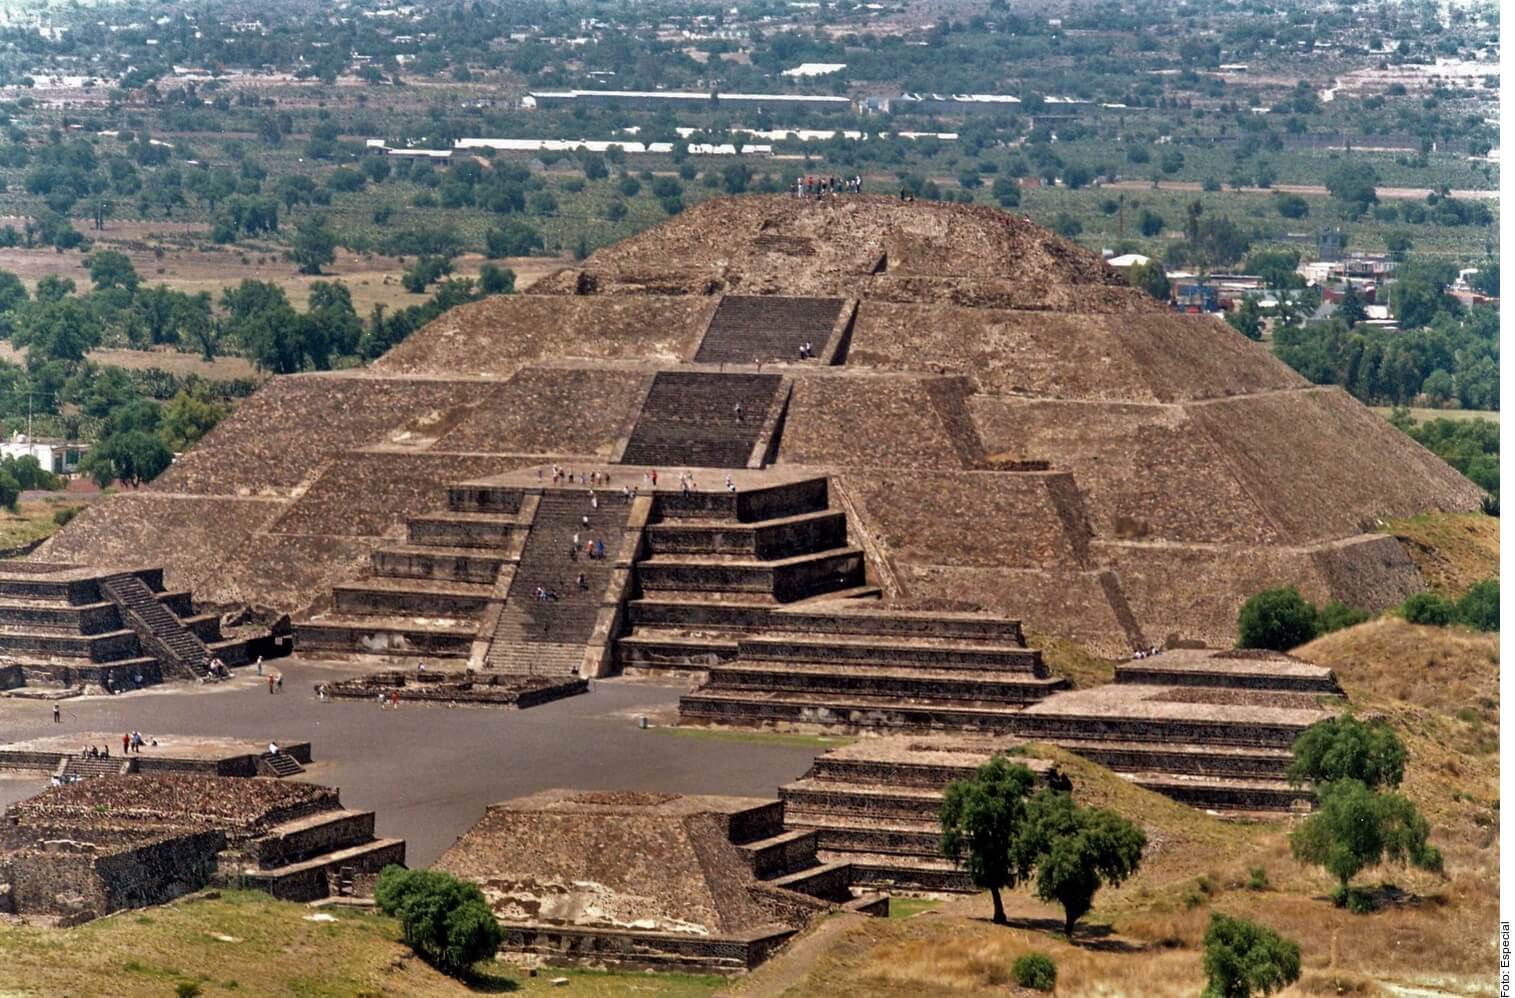 Locuri spectaculoase din Mexic. Piramidele din Teotihuacán